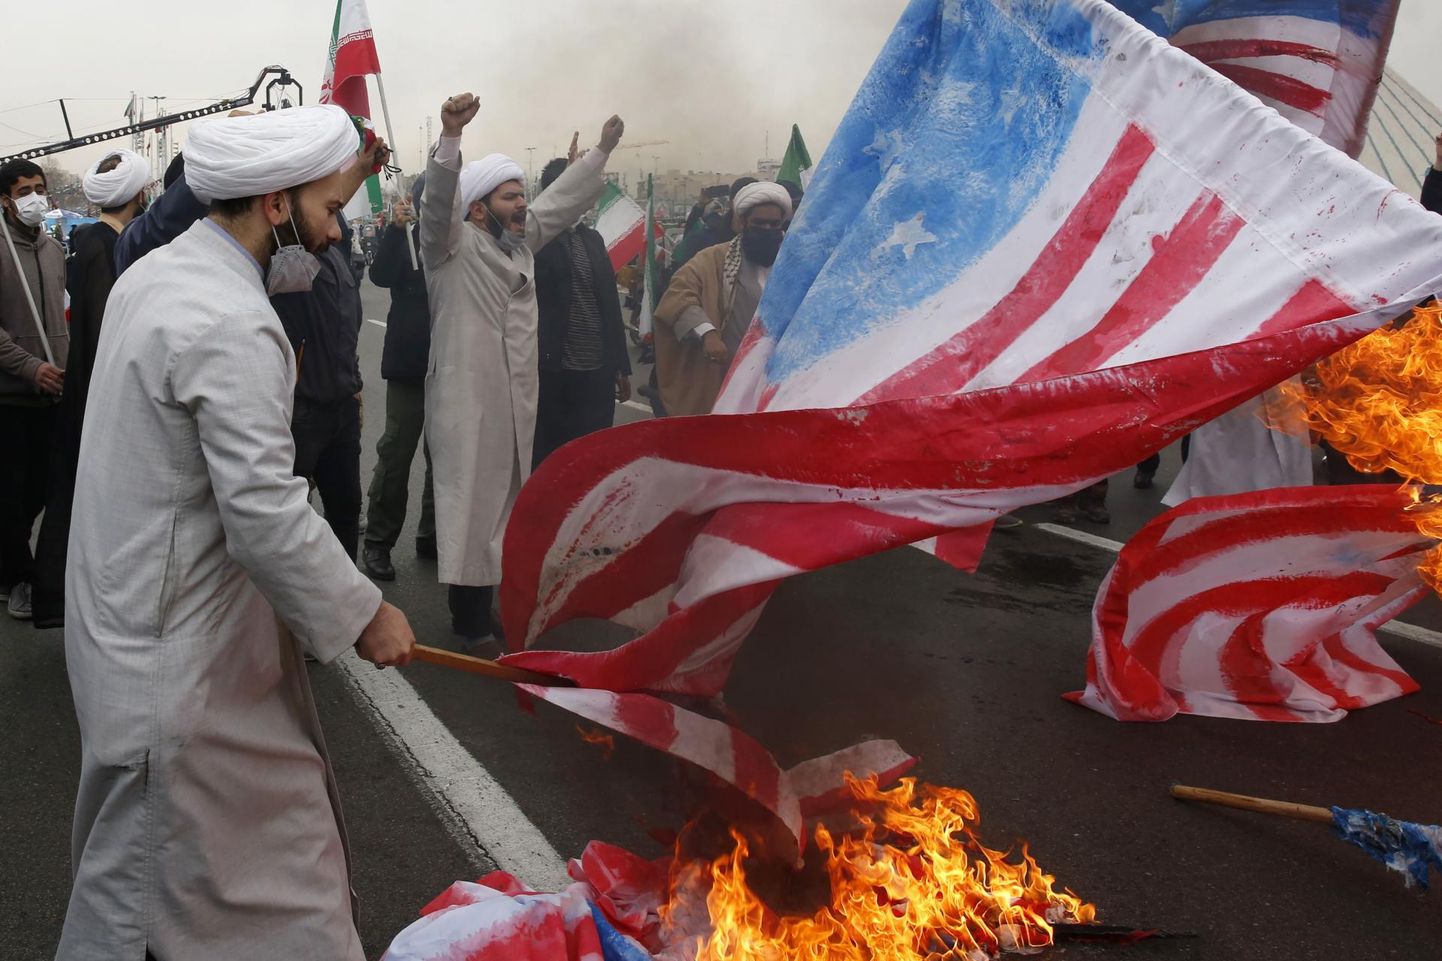 Iraani vaimulikud põletavad tänavu 11. veebruaril Iraani islamirevolutsiooni aastapäeval Teheranis Vabaduse väljakul Ameerika Ühendriikide lippe.